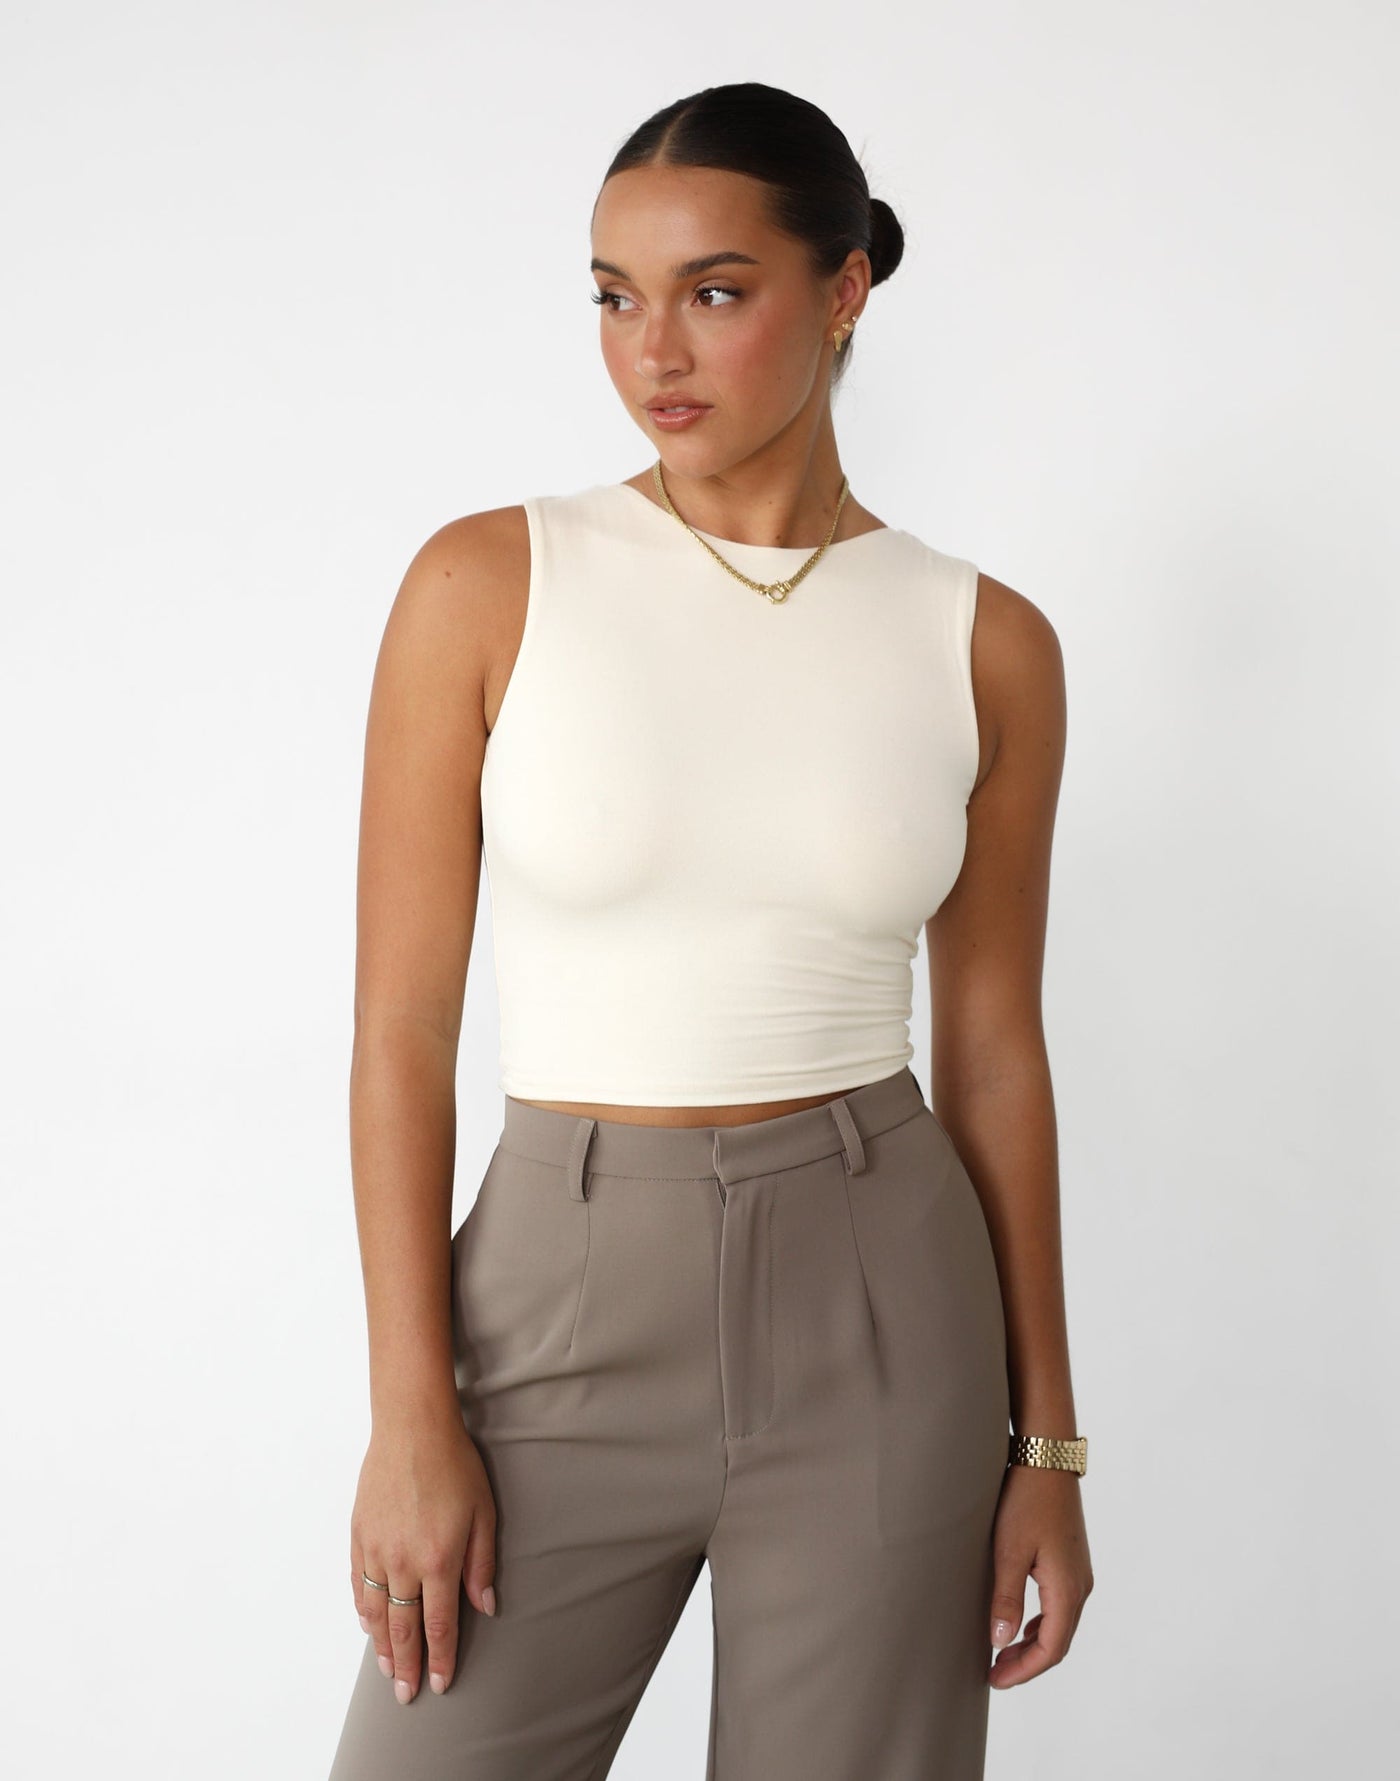 Indi Crop Top (Cream) - Scoop Neck Backless Crop Top - Women's Top - Charcoal Clothing